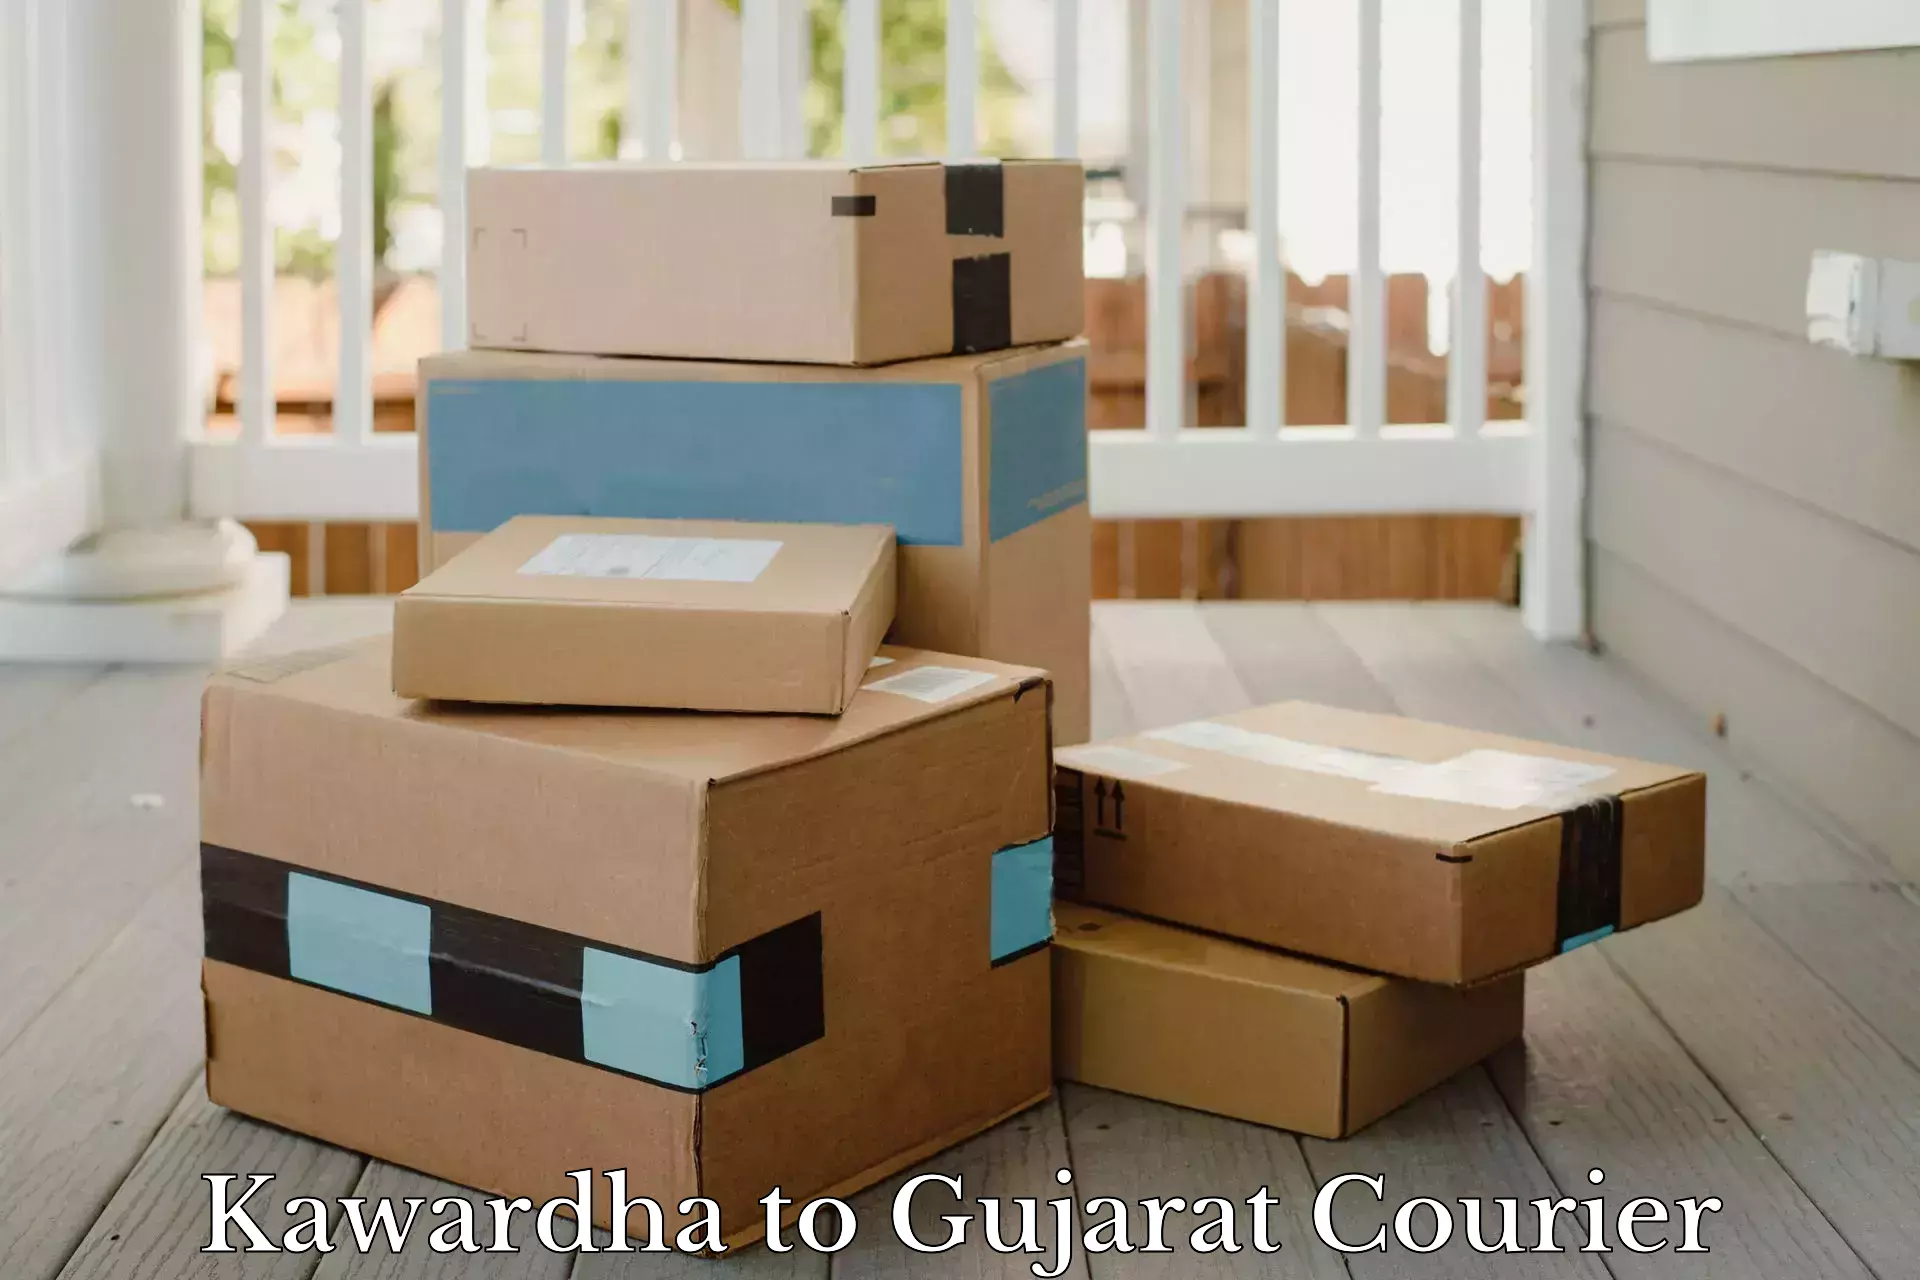 Local delivery service Kawardha to Vyara